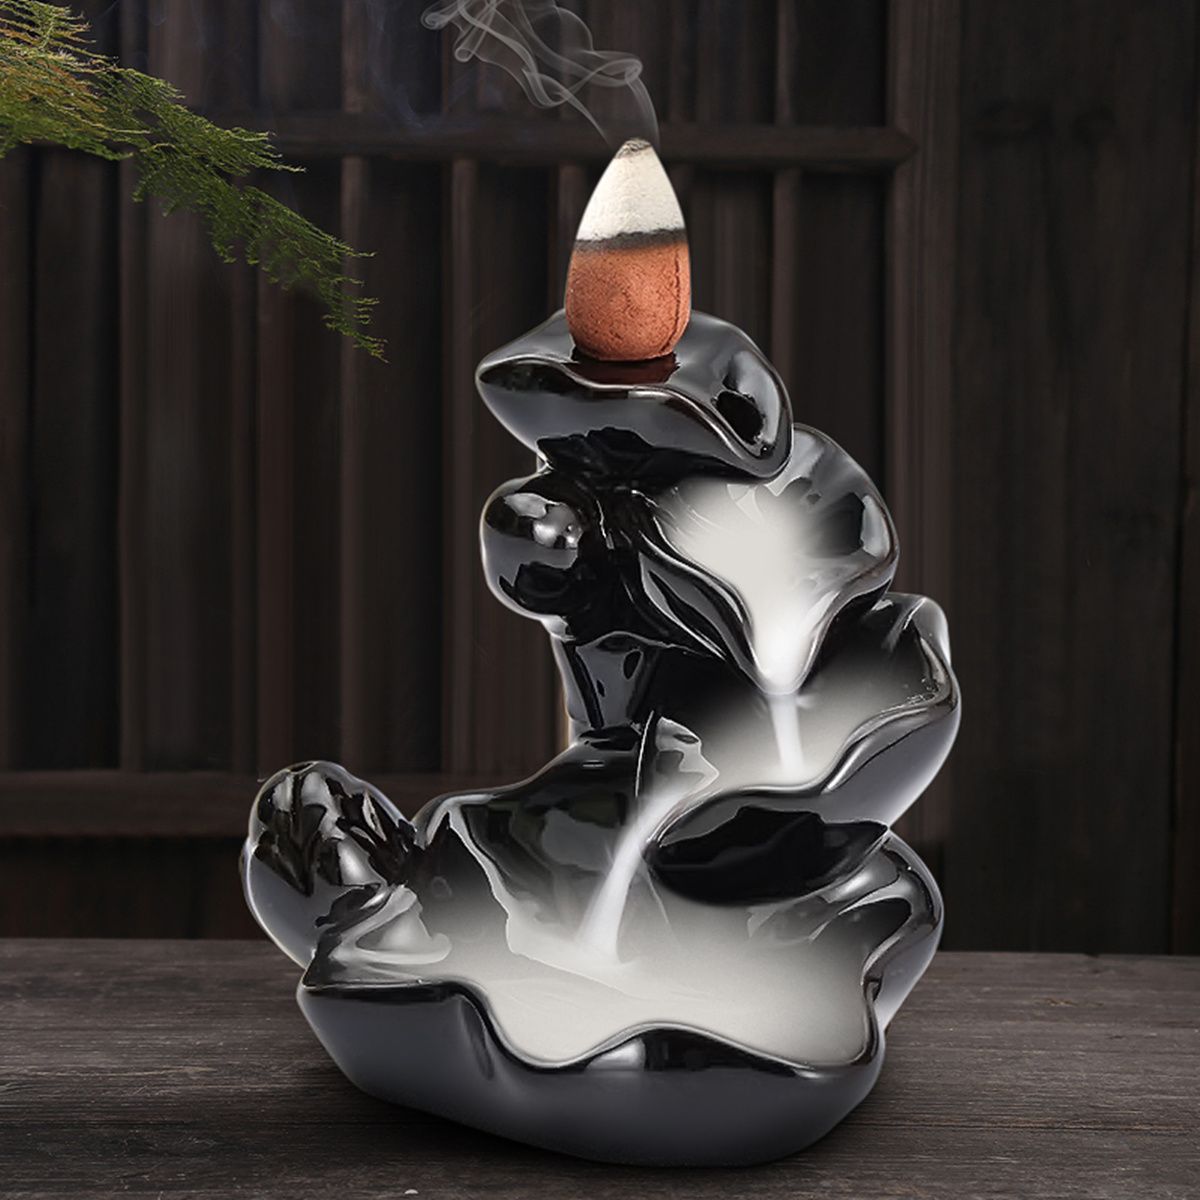 Backflow-Incense-Cone-Burner-Holder-Ceramic-Lotus-Stream-Fragrant-Smoke-Backflow-Home-Censer-Decor-1304947